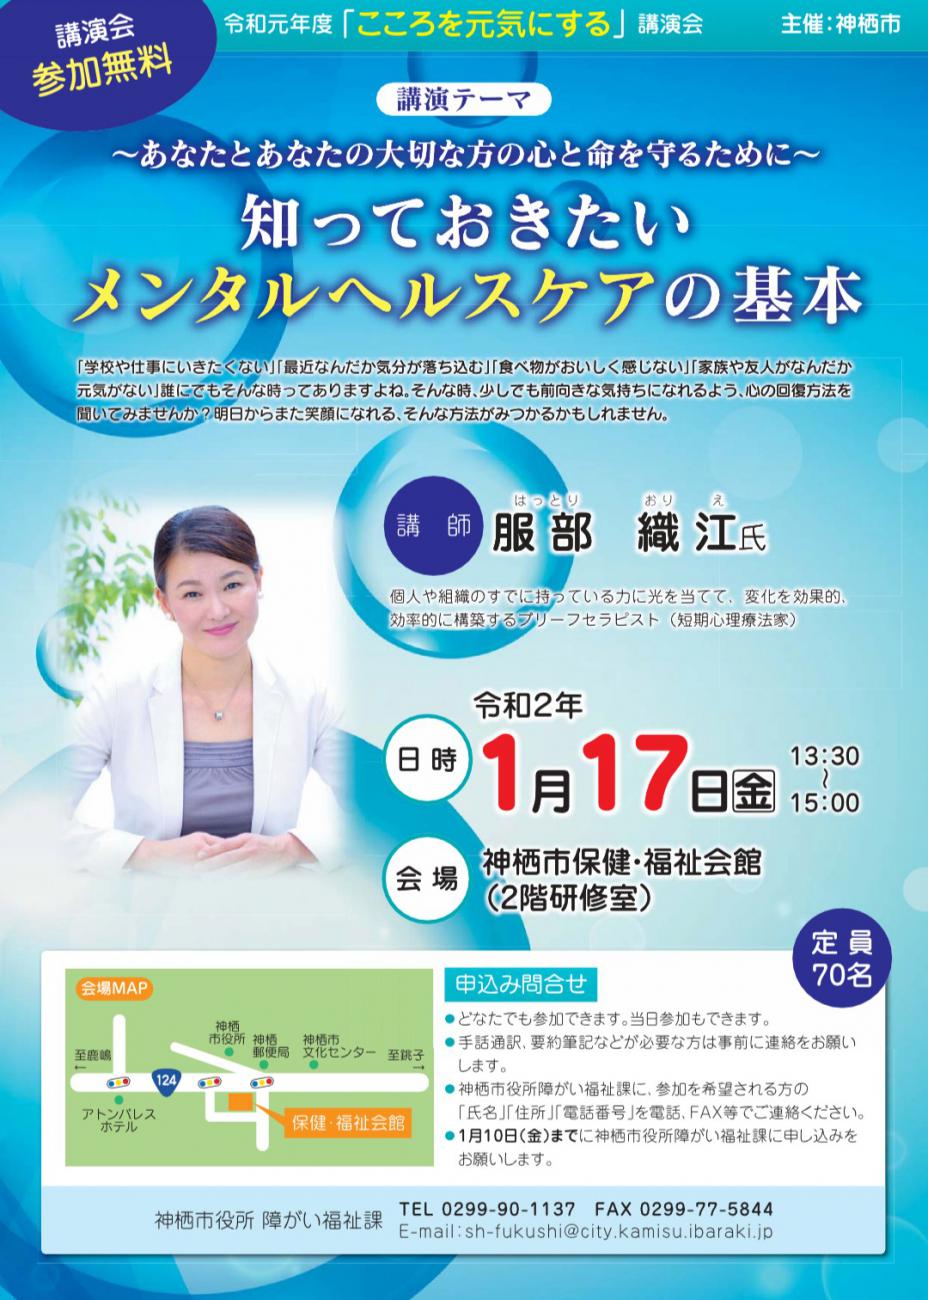 茨城県神栖市主催の「こころを元気にする講演会」にて「あなたとあなたの大切な方の心と命を守るために〜知っておきたいメンタルヘルスケアの基本」と題してお話させていだだきました。